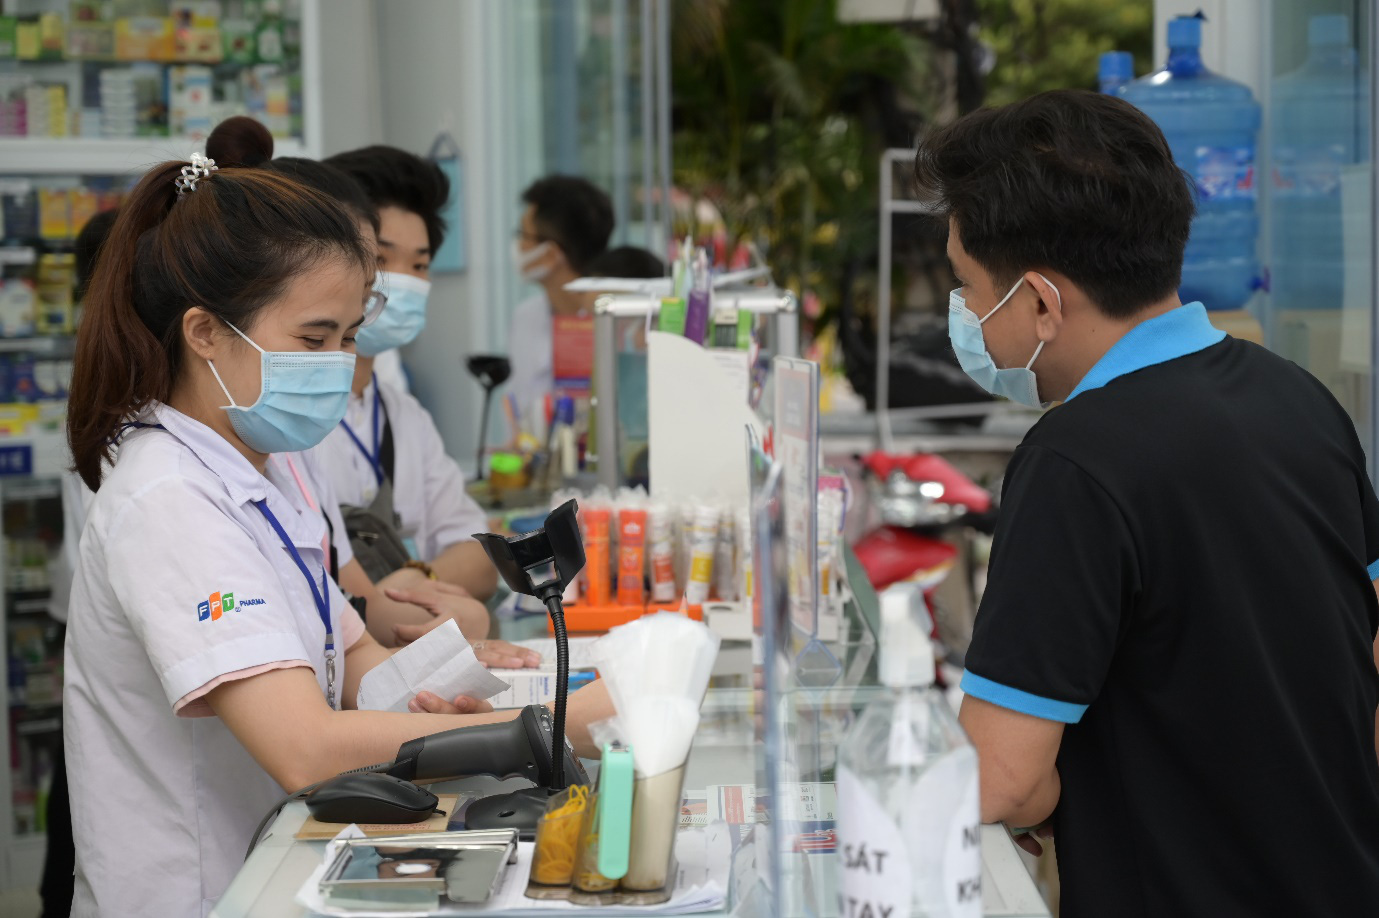 Hệ thống nhà thuốc FPT Long Châu dẫn đầu thị phần bán lẻ thuốc và thiết bị y tế - Ảnh 2.